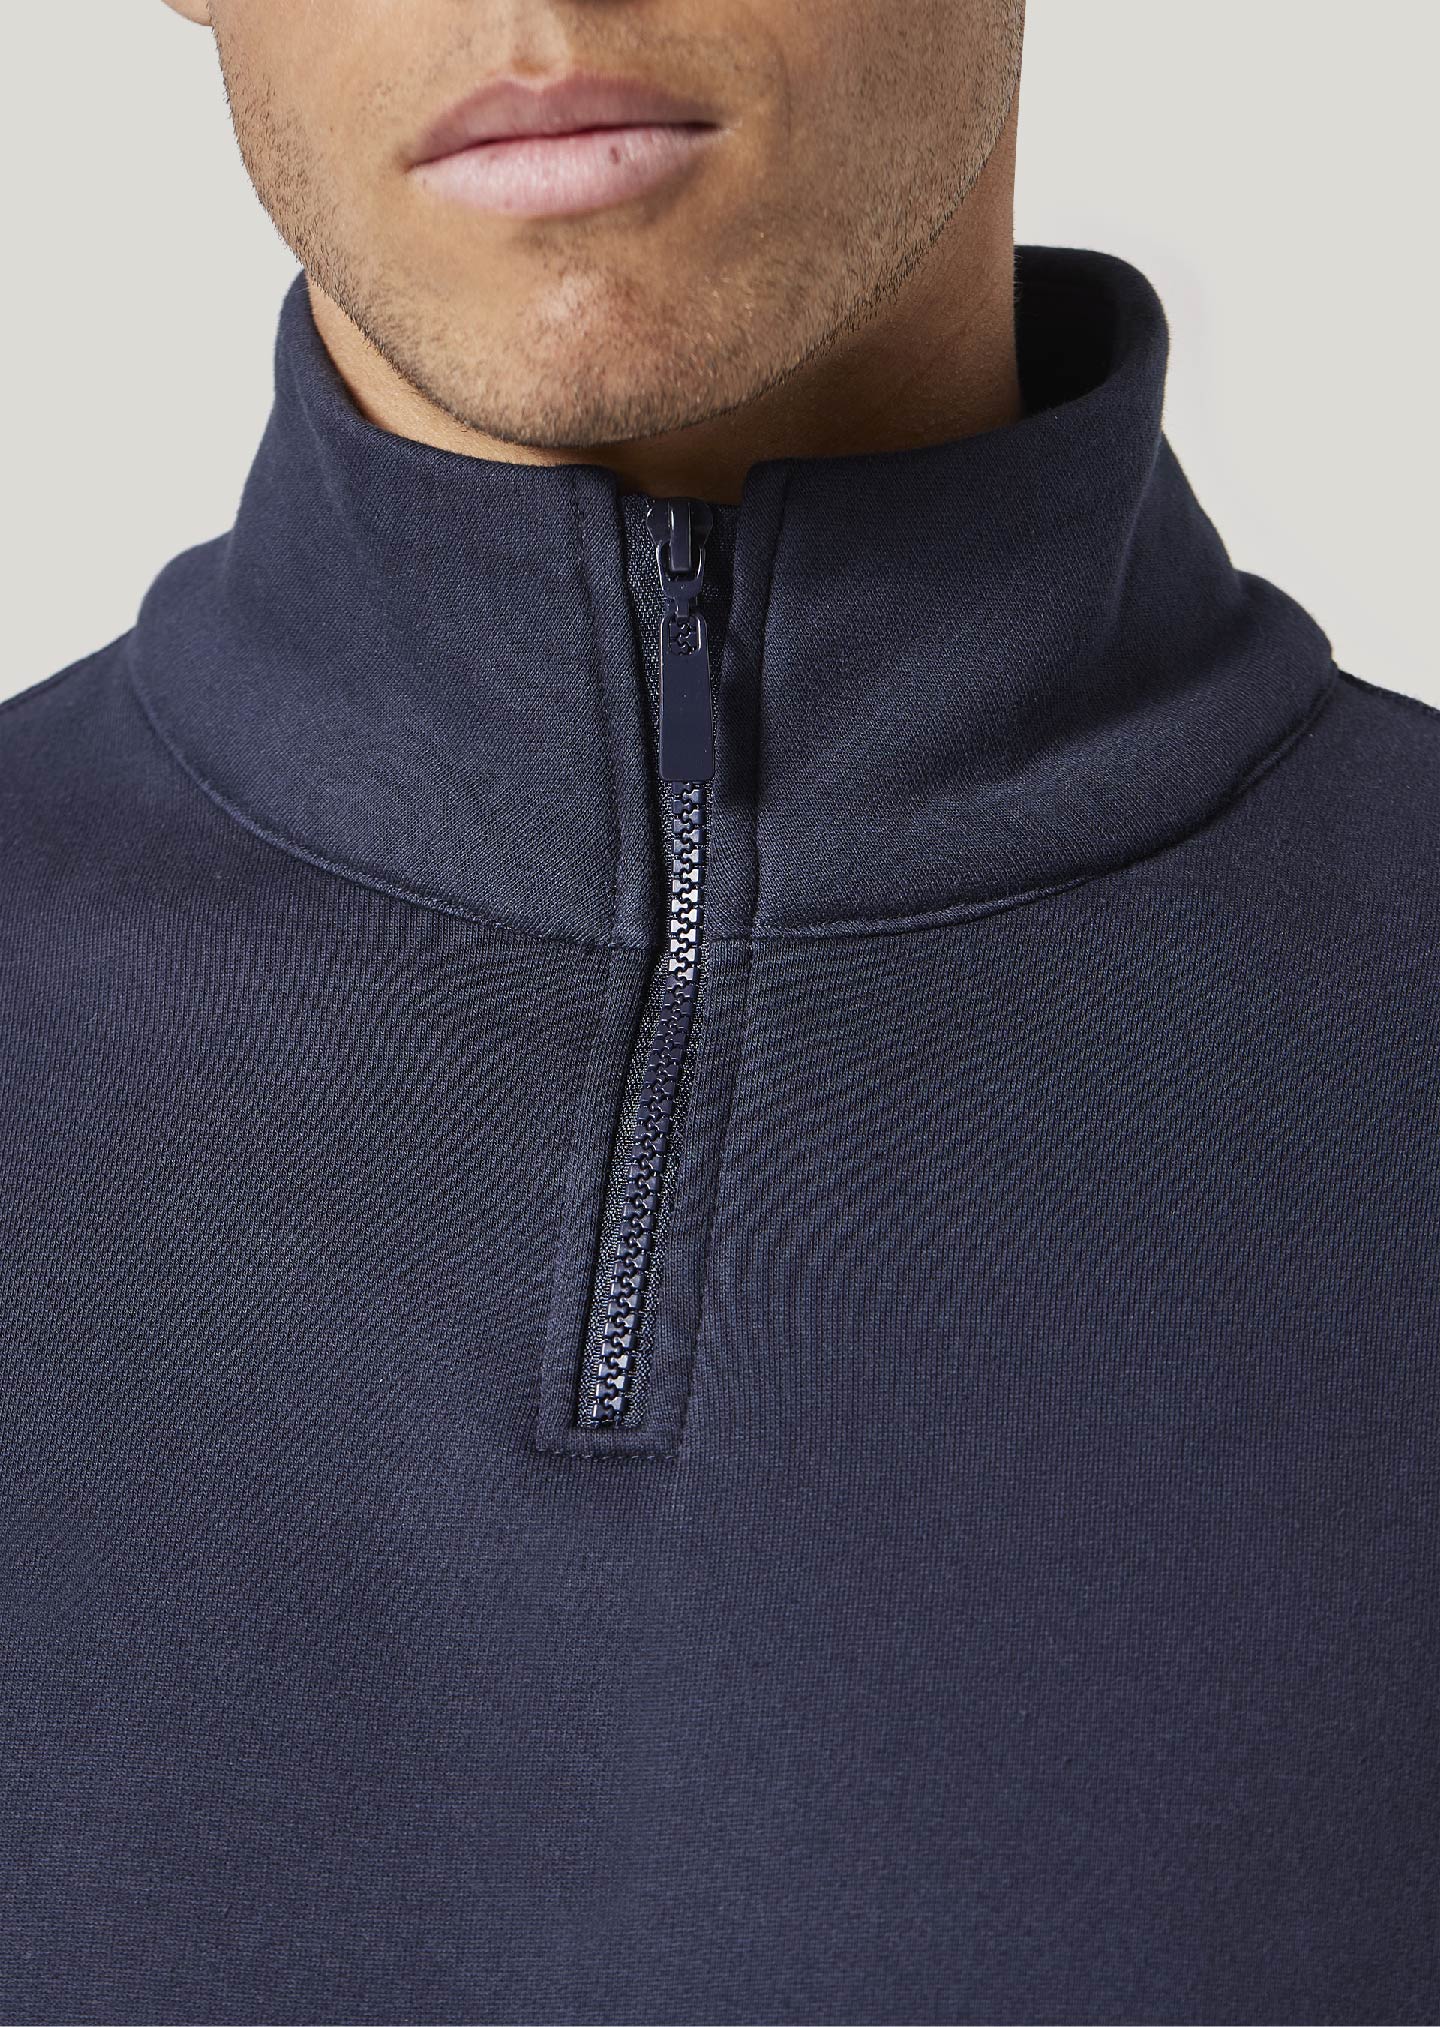 Hampshire Navy Zip Up Sweatshirt